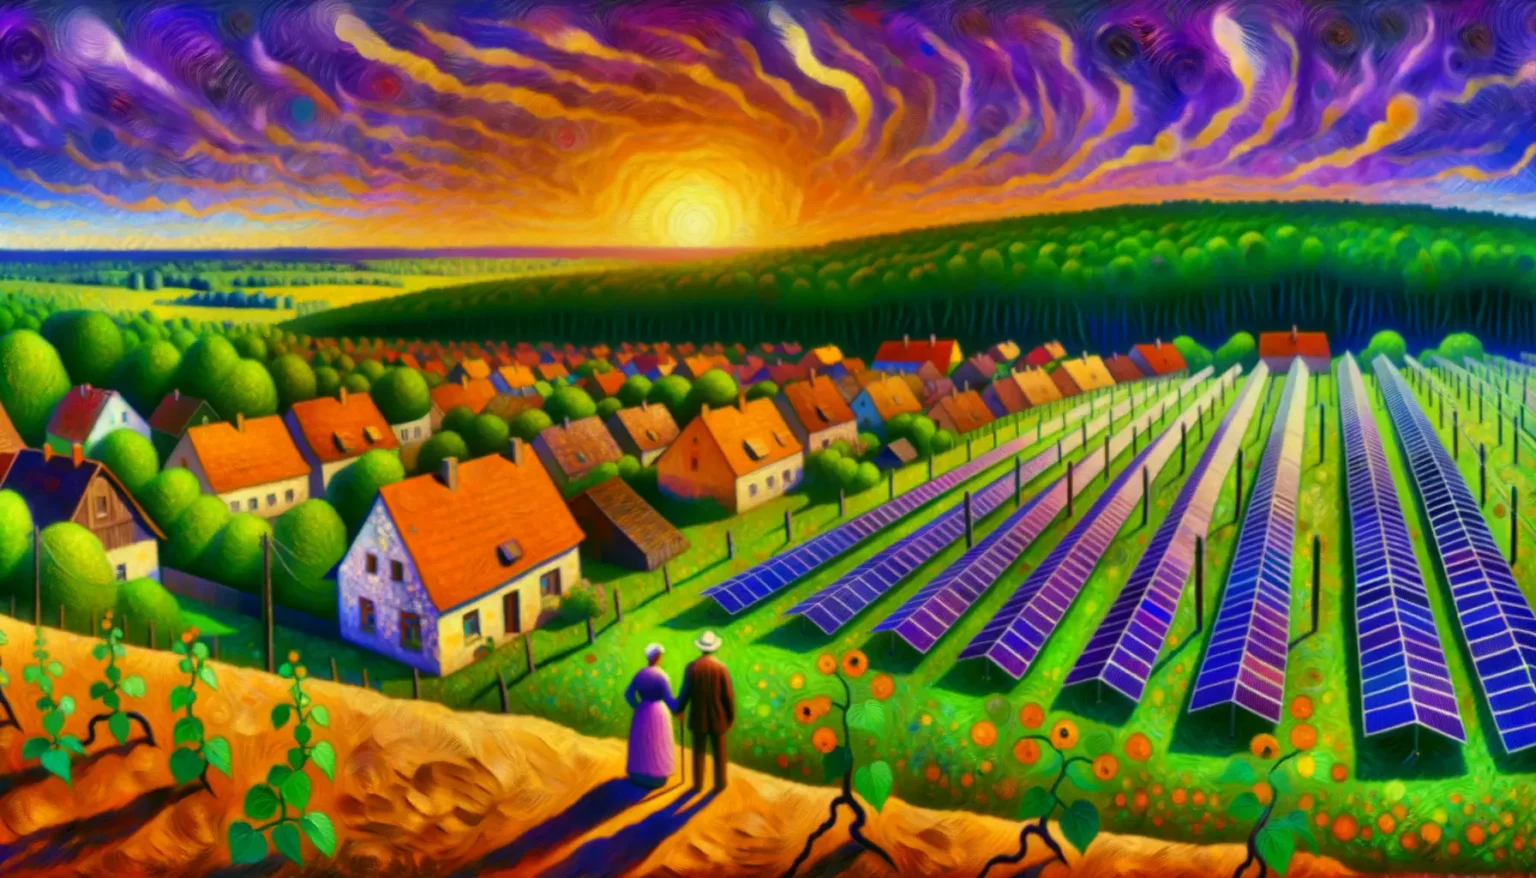 Farbenfrohes, stilisiertes Gemälde einer ländlichen Landschaft mit expressionistischen, wirbelnden Himmelsmustern, ähnlich dem Kunststil von Van Gogh. Im Vordergrund stehen zwei Figuren auf einer Anhöhe, die auf ein Dorf mit rot gedeckten Häusern und umgebenden Feldern blicken. Die Felder weisen üppige grüne Baumreihen und lange Reihen von Solarpaneelen auf.